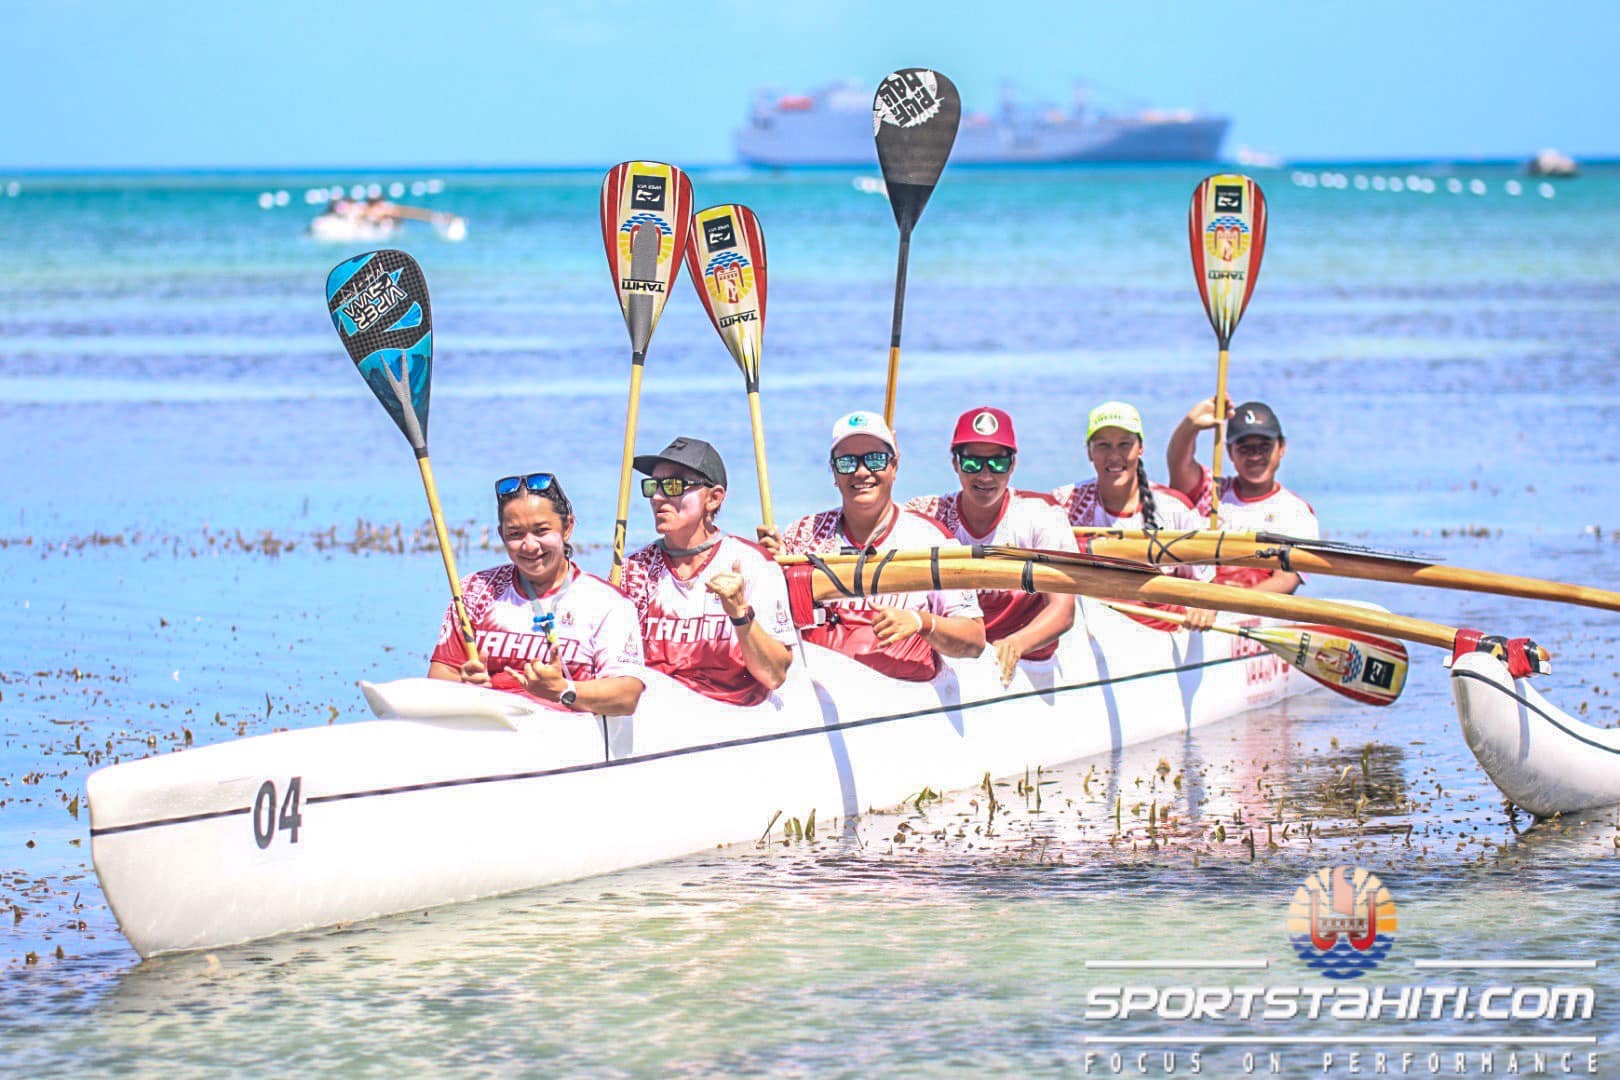 Les vahine repartent des Mini-Jeux de Saipan avec six médailles d'or dans leurs valises. (© sportstahiti.com - Tane)